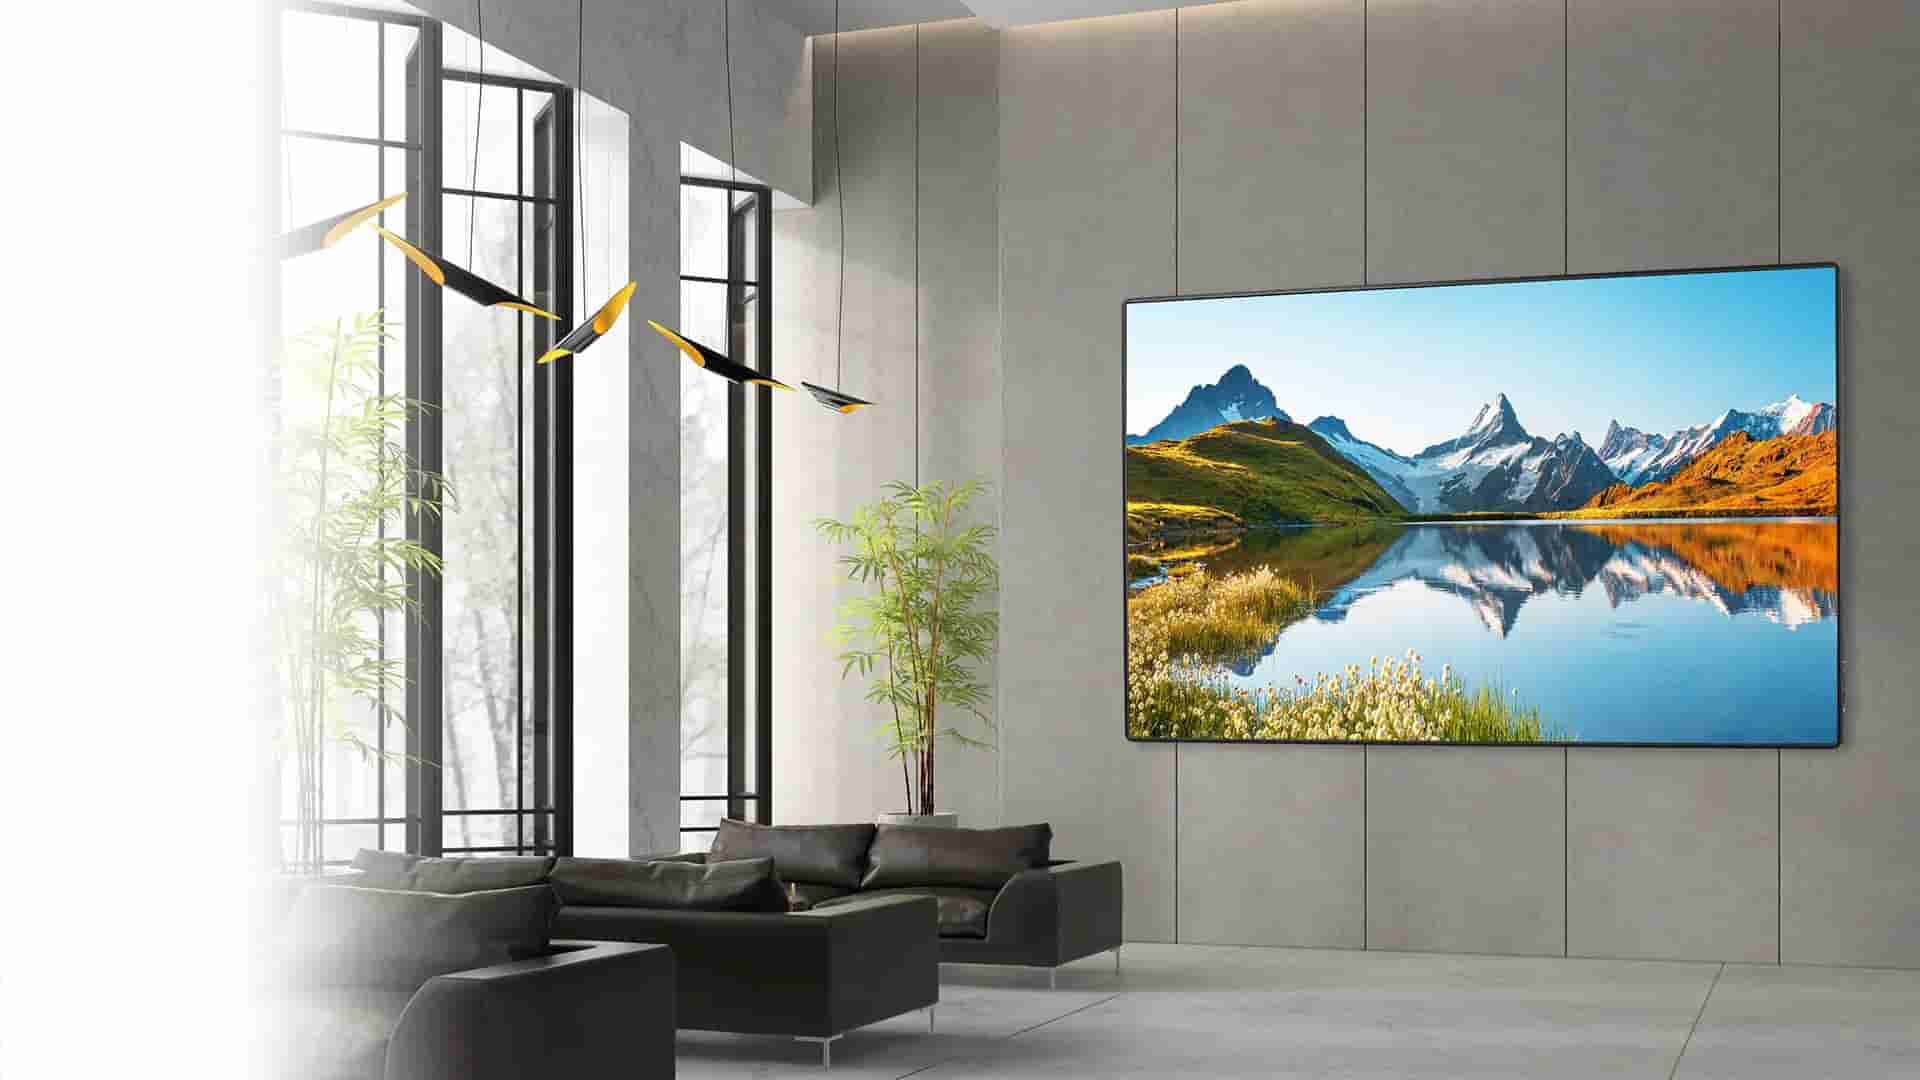 In einem großen Raum mit Sofas und hohen Fenstern, hängt eine LED-Wall von Optoma an der Wand.